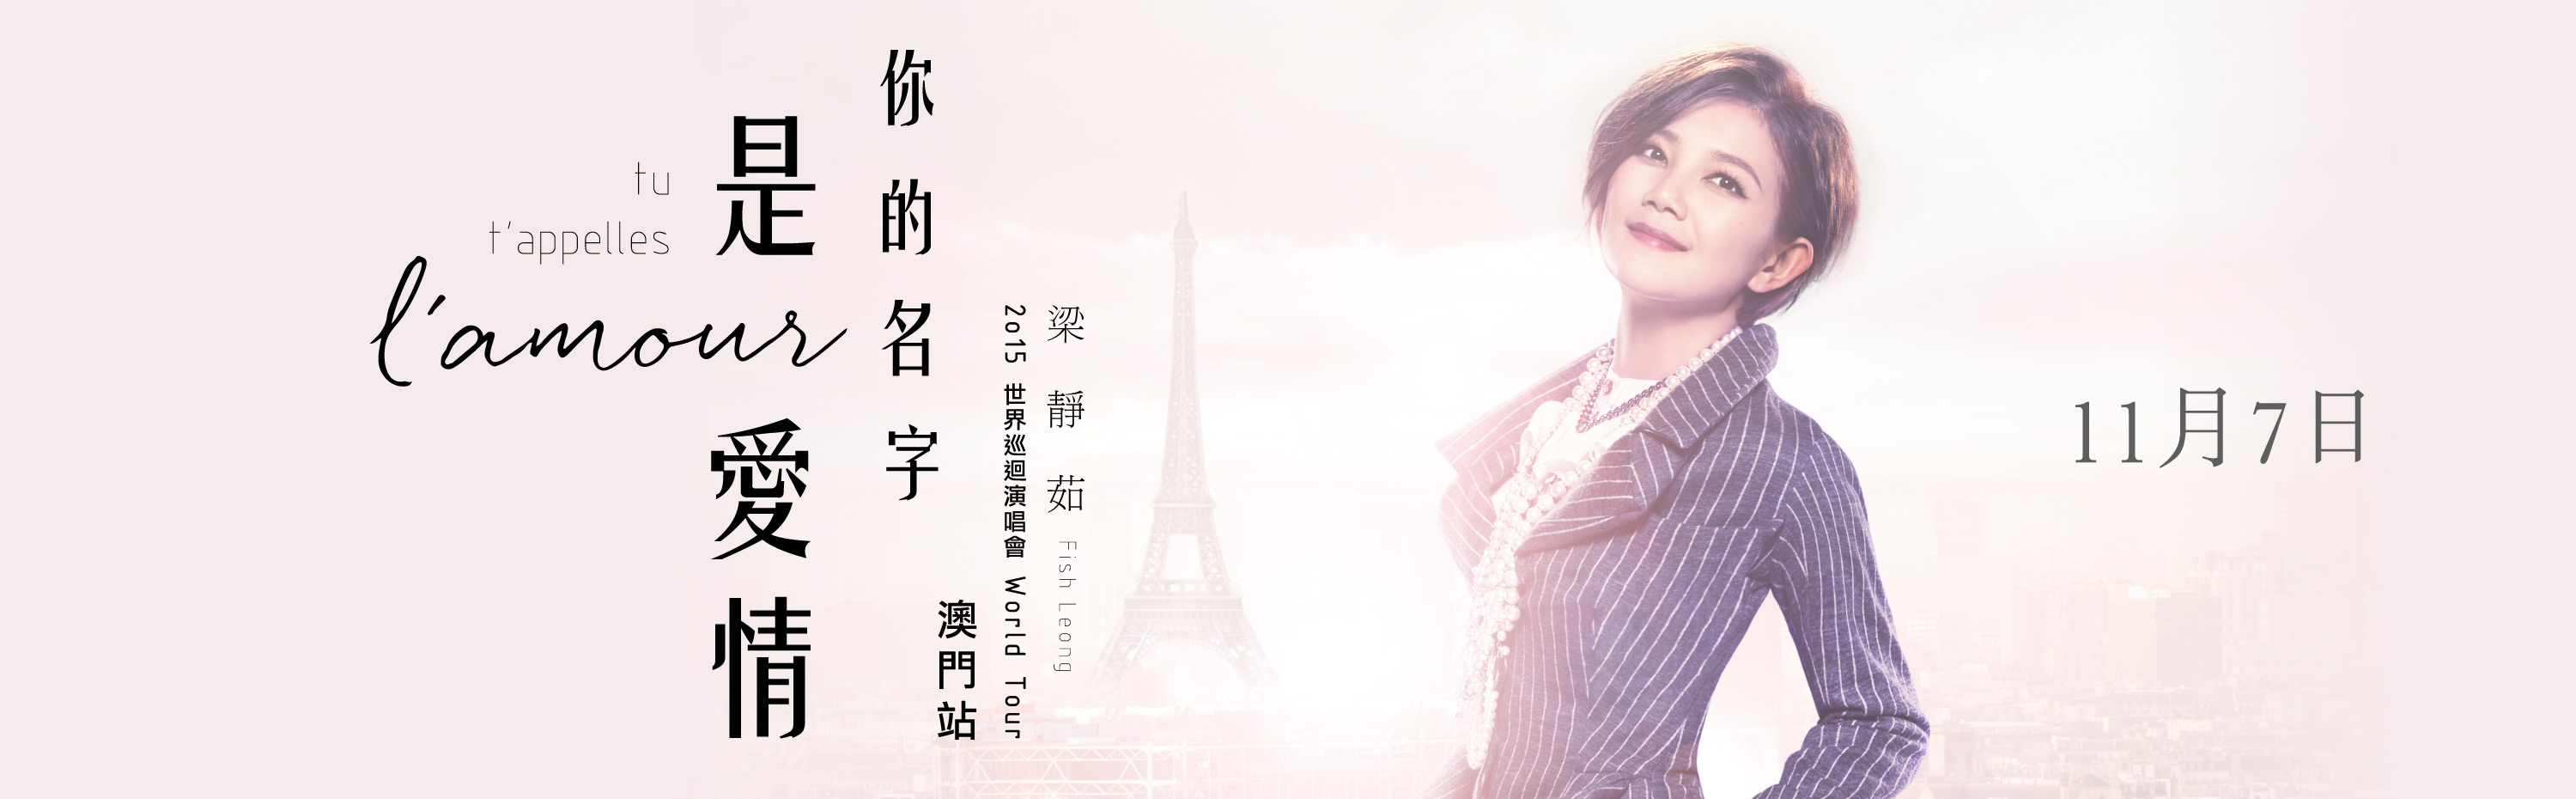 杨千嬅 Let's Begin 世界巡回演唱会2015 - 澳门站